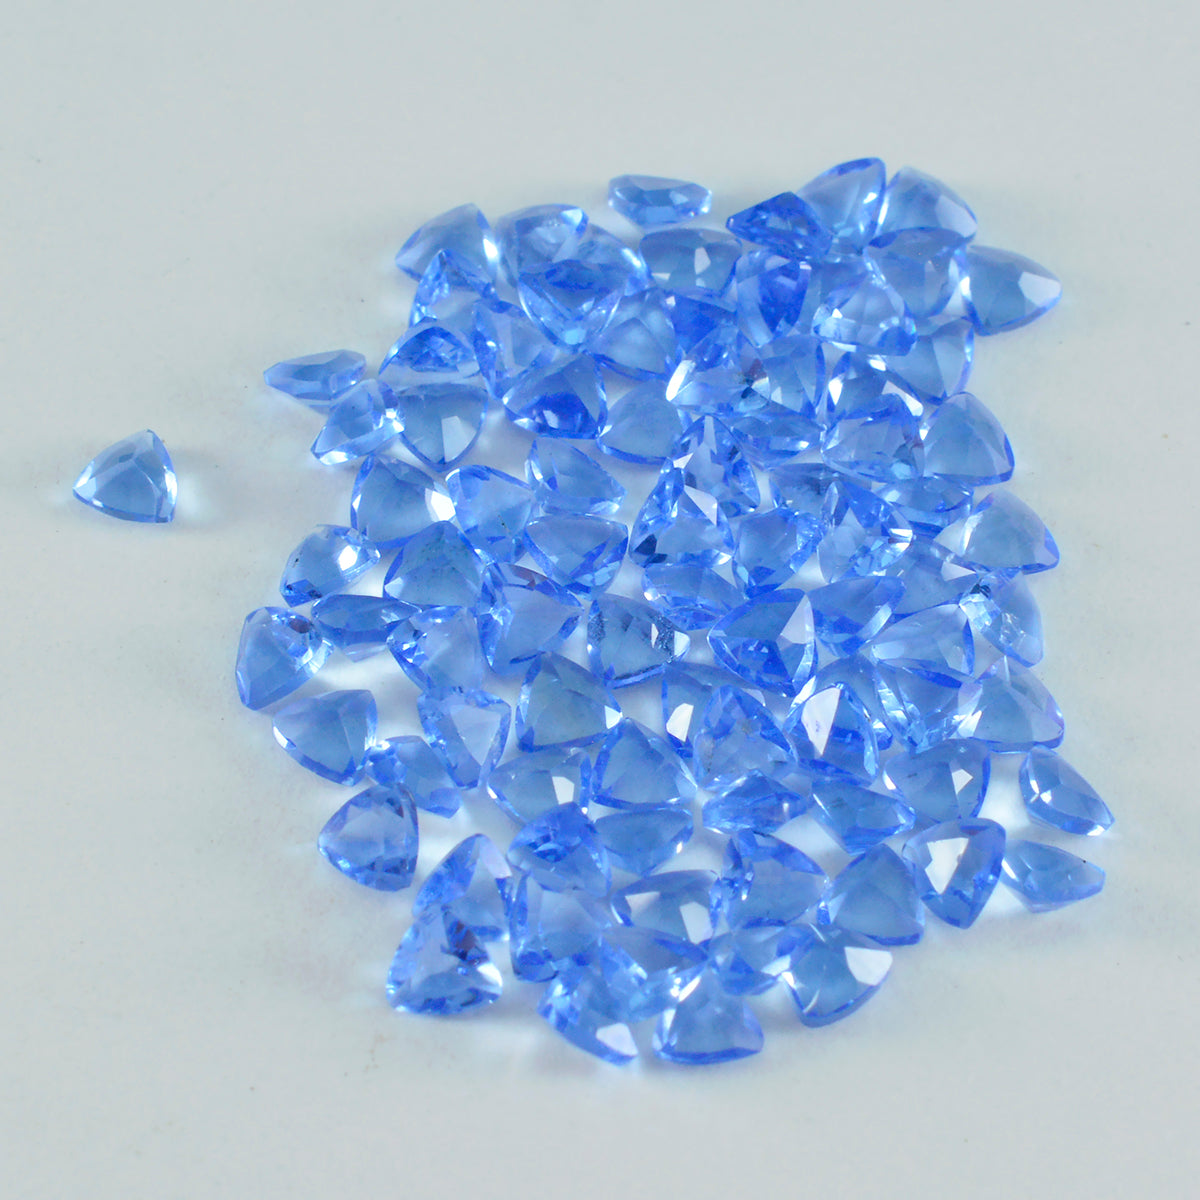 Riyogems 1 Stück blauer Saphir, CZ, facettiert, 4 x 4 mm, Billionenform, hübscher Qualitätsedelstein